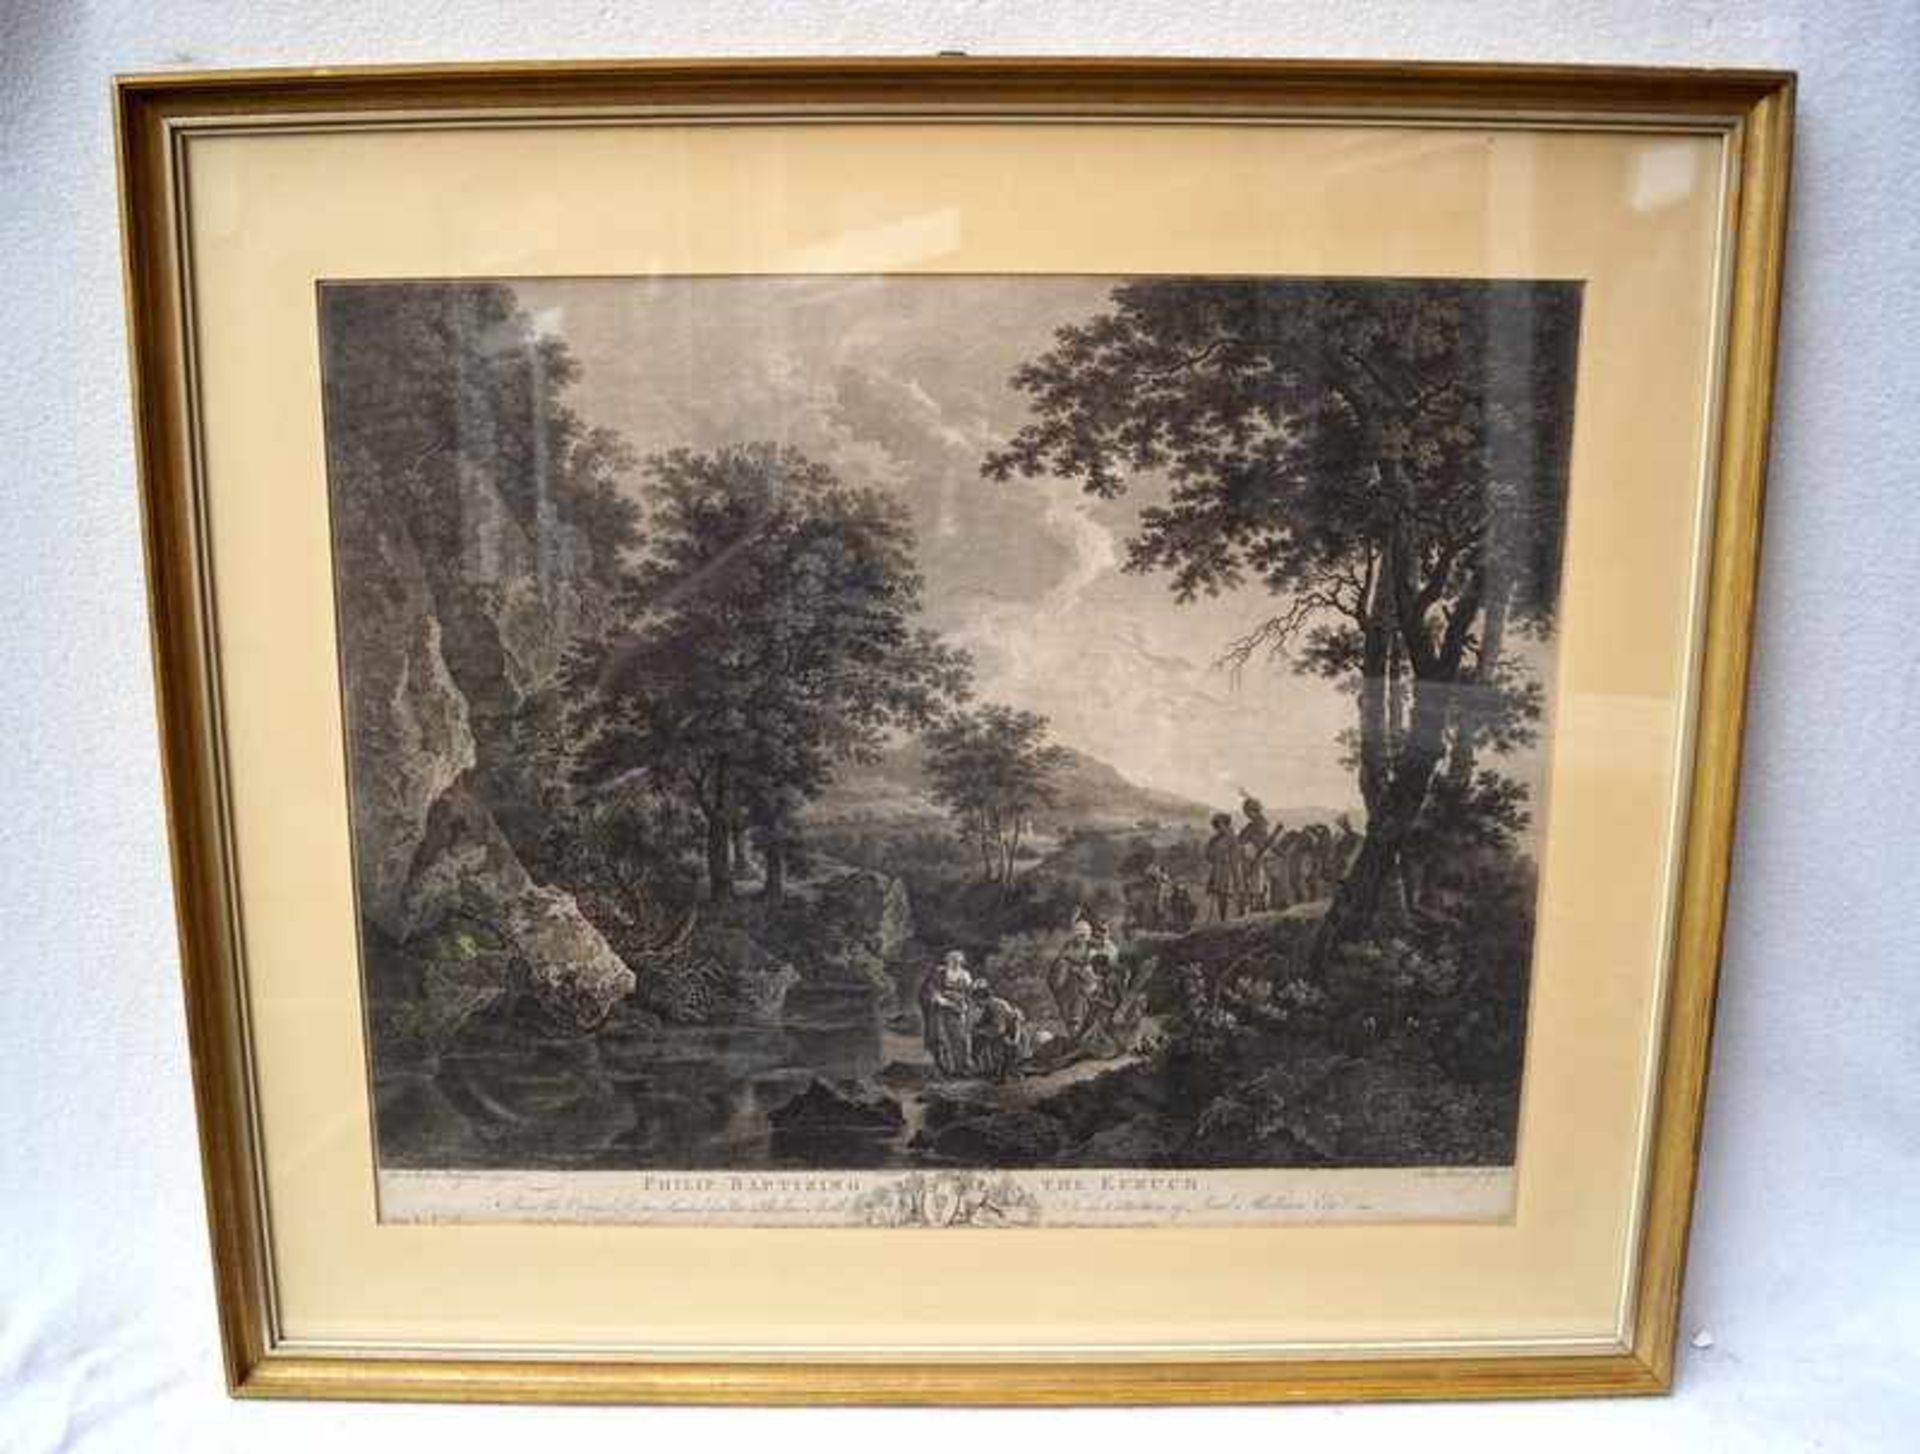 Browne, John (1742 - 1801): " Philip Baptizing The Eunuch" großformatiger Kupferstich auf Bütten,